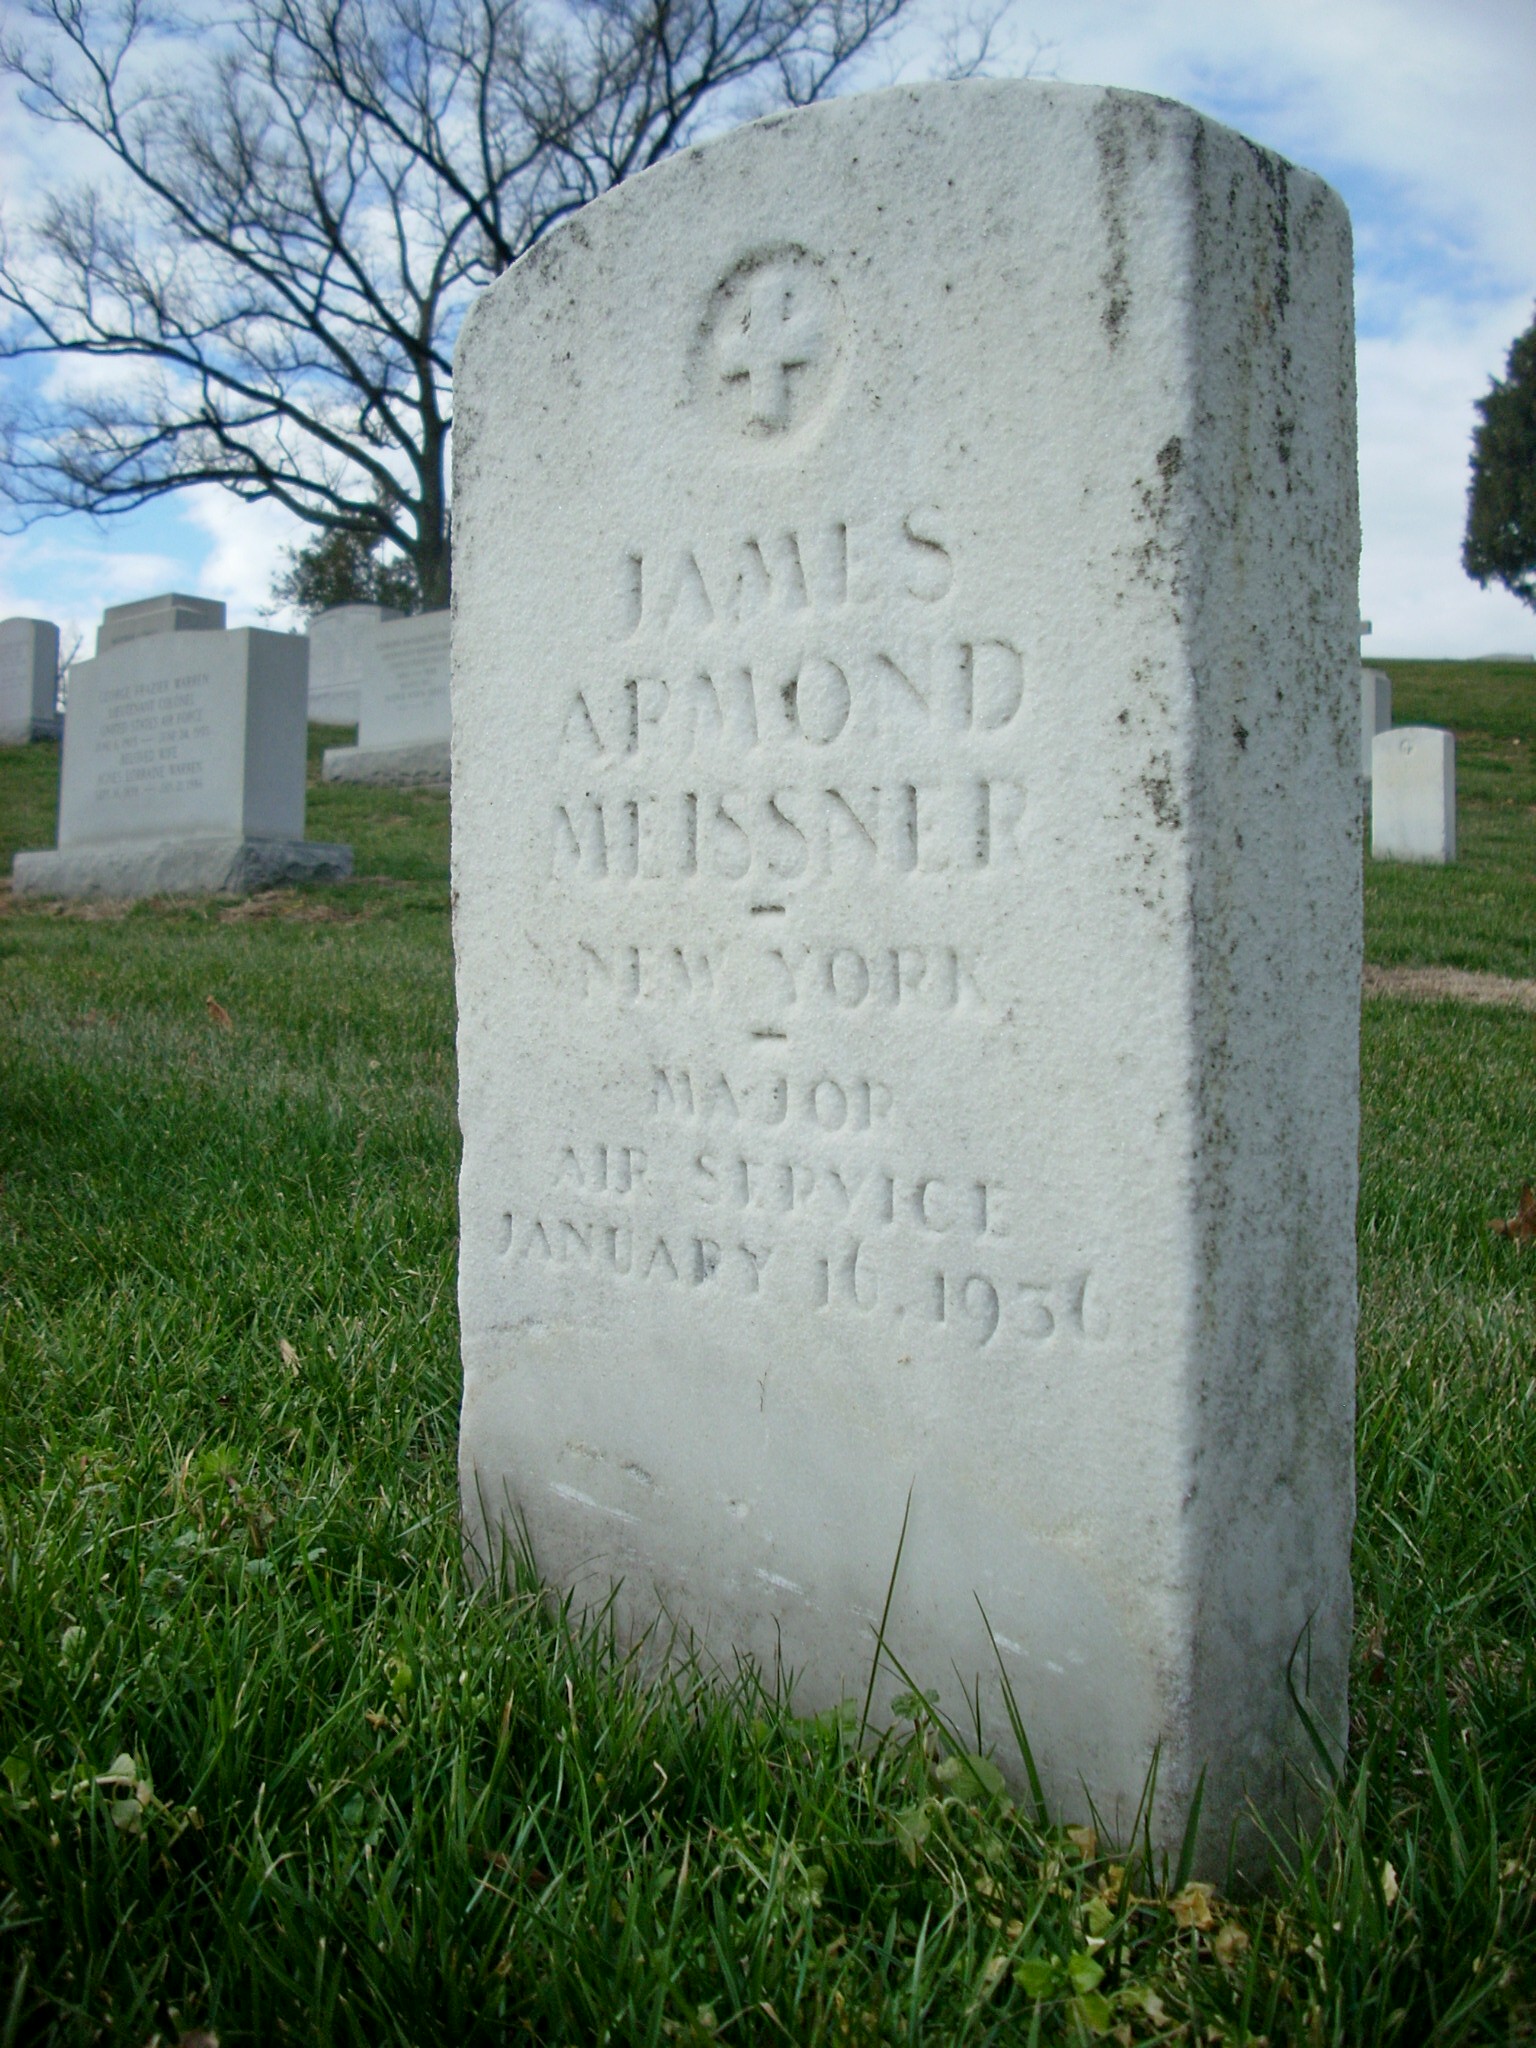 jameissner-gravesite-photo-january-2009-002